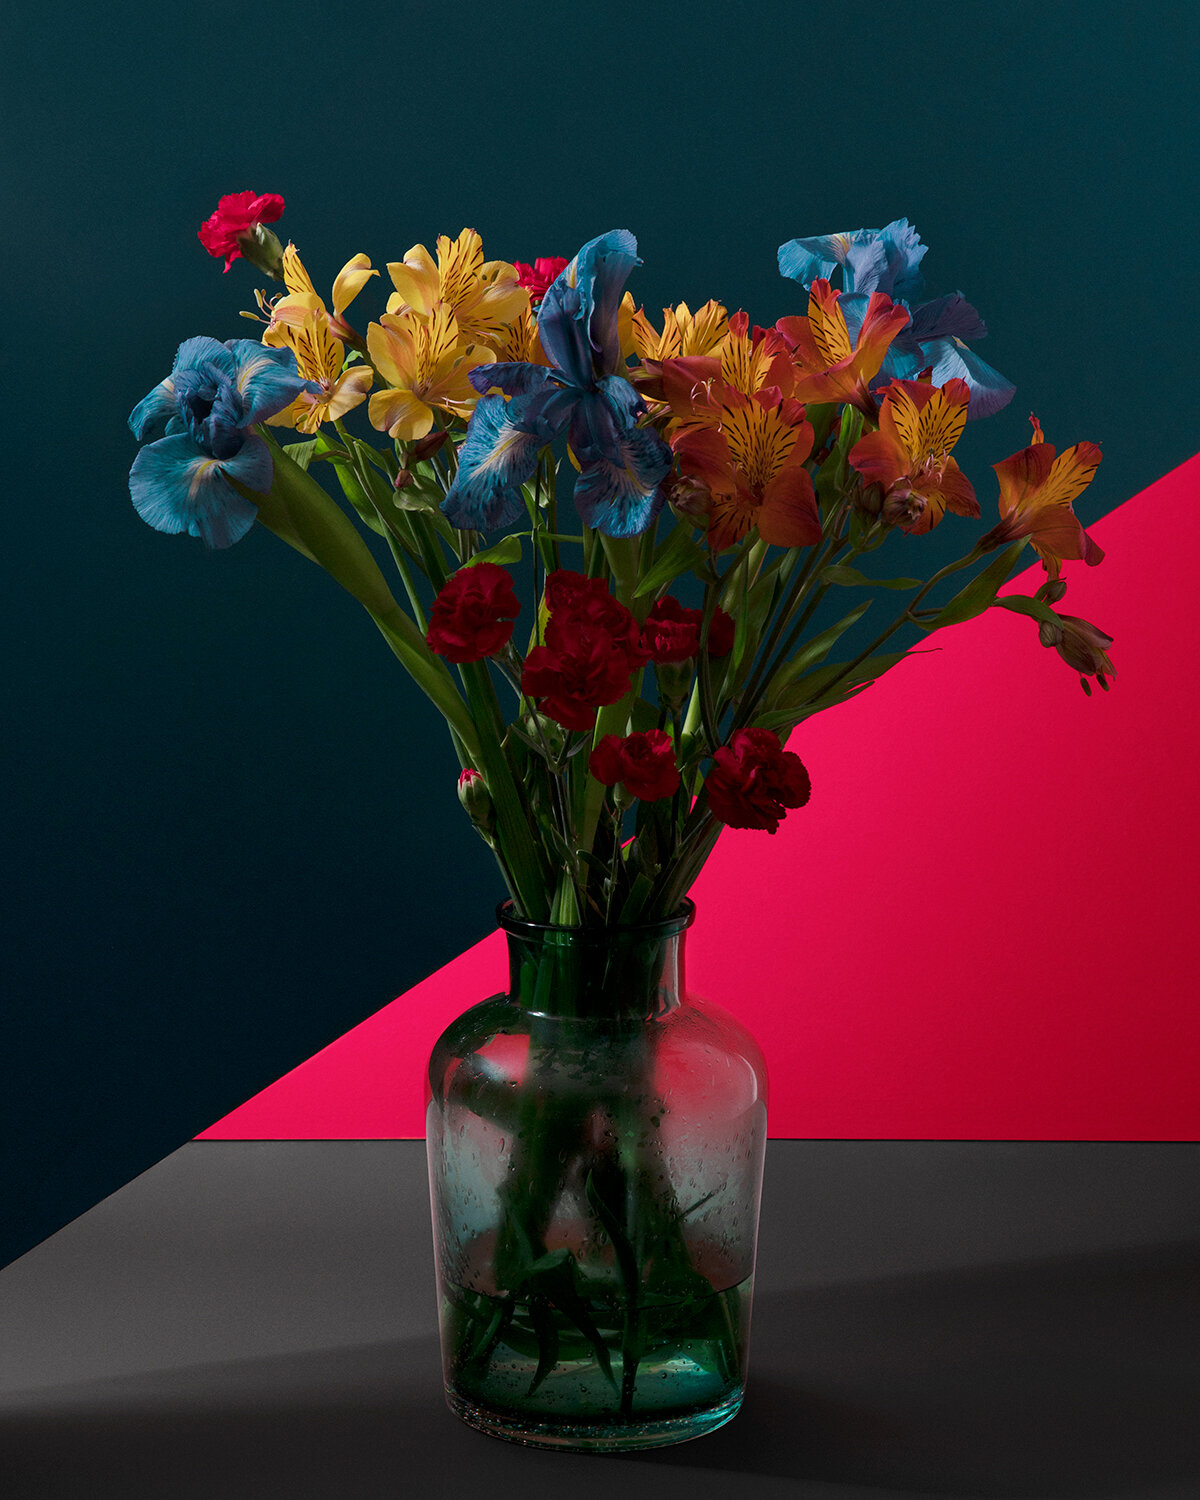  flowers in vase 